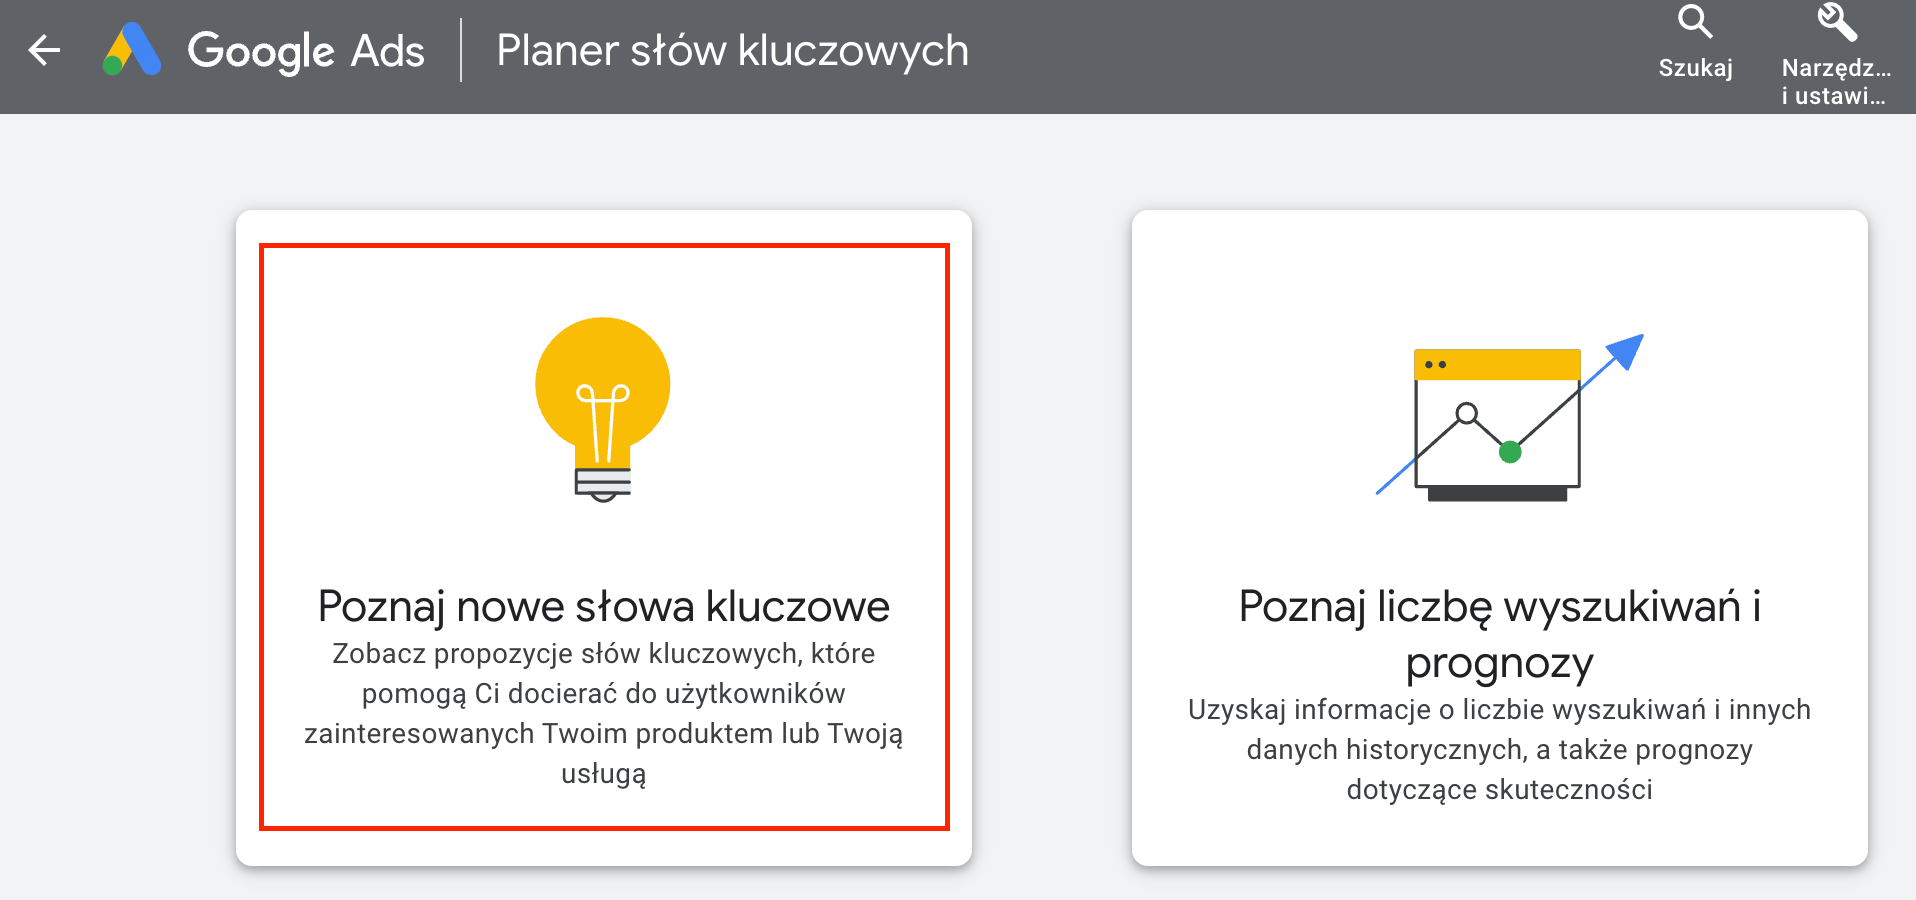 Google Keyword Planner "Poznaj nowe słowa kluczowe"